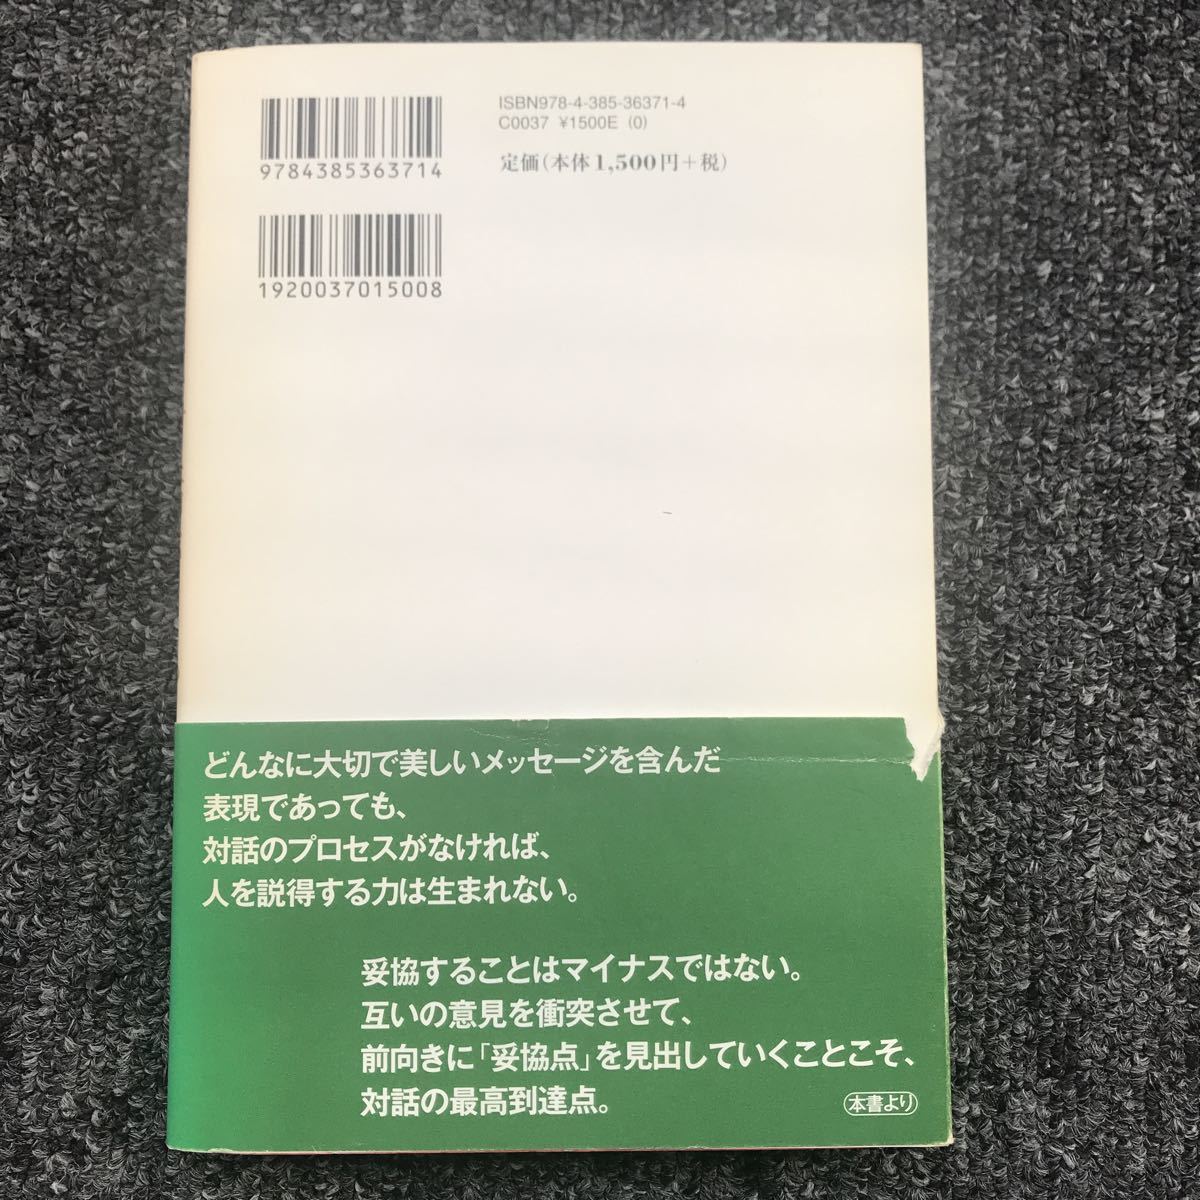 ニッポンには対話がない 学びとコミュニケーションの再生 三省堂 2008年4月30日（第1刷）発行 ISBN 9784385363714